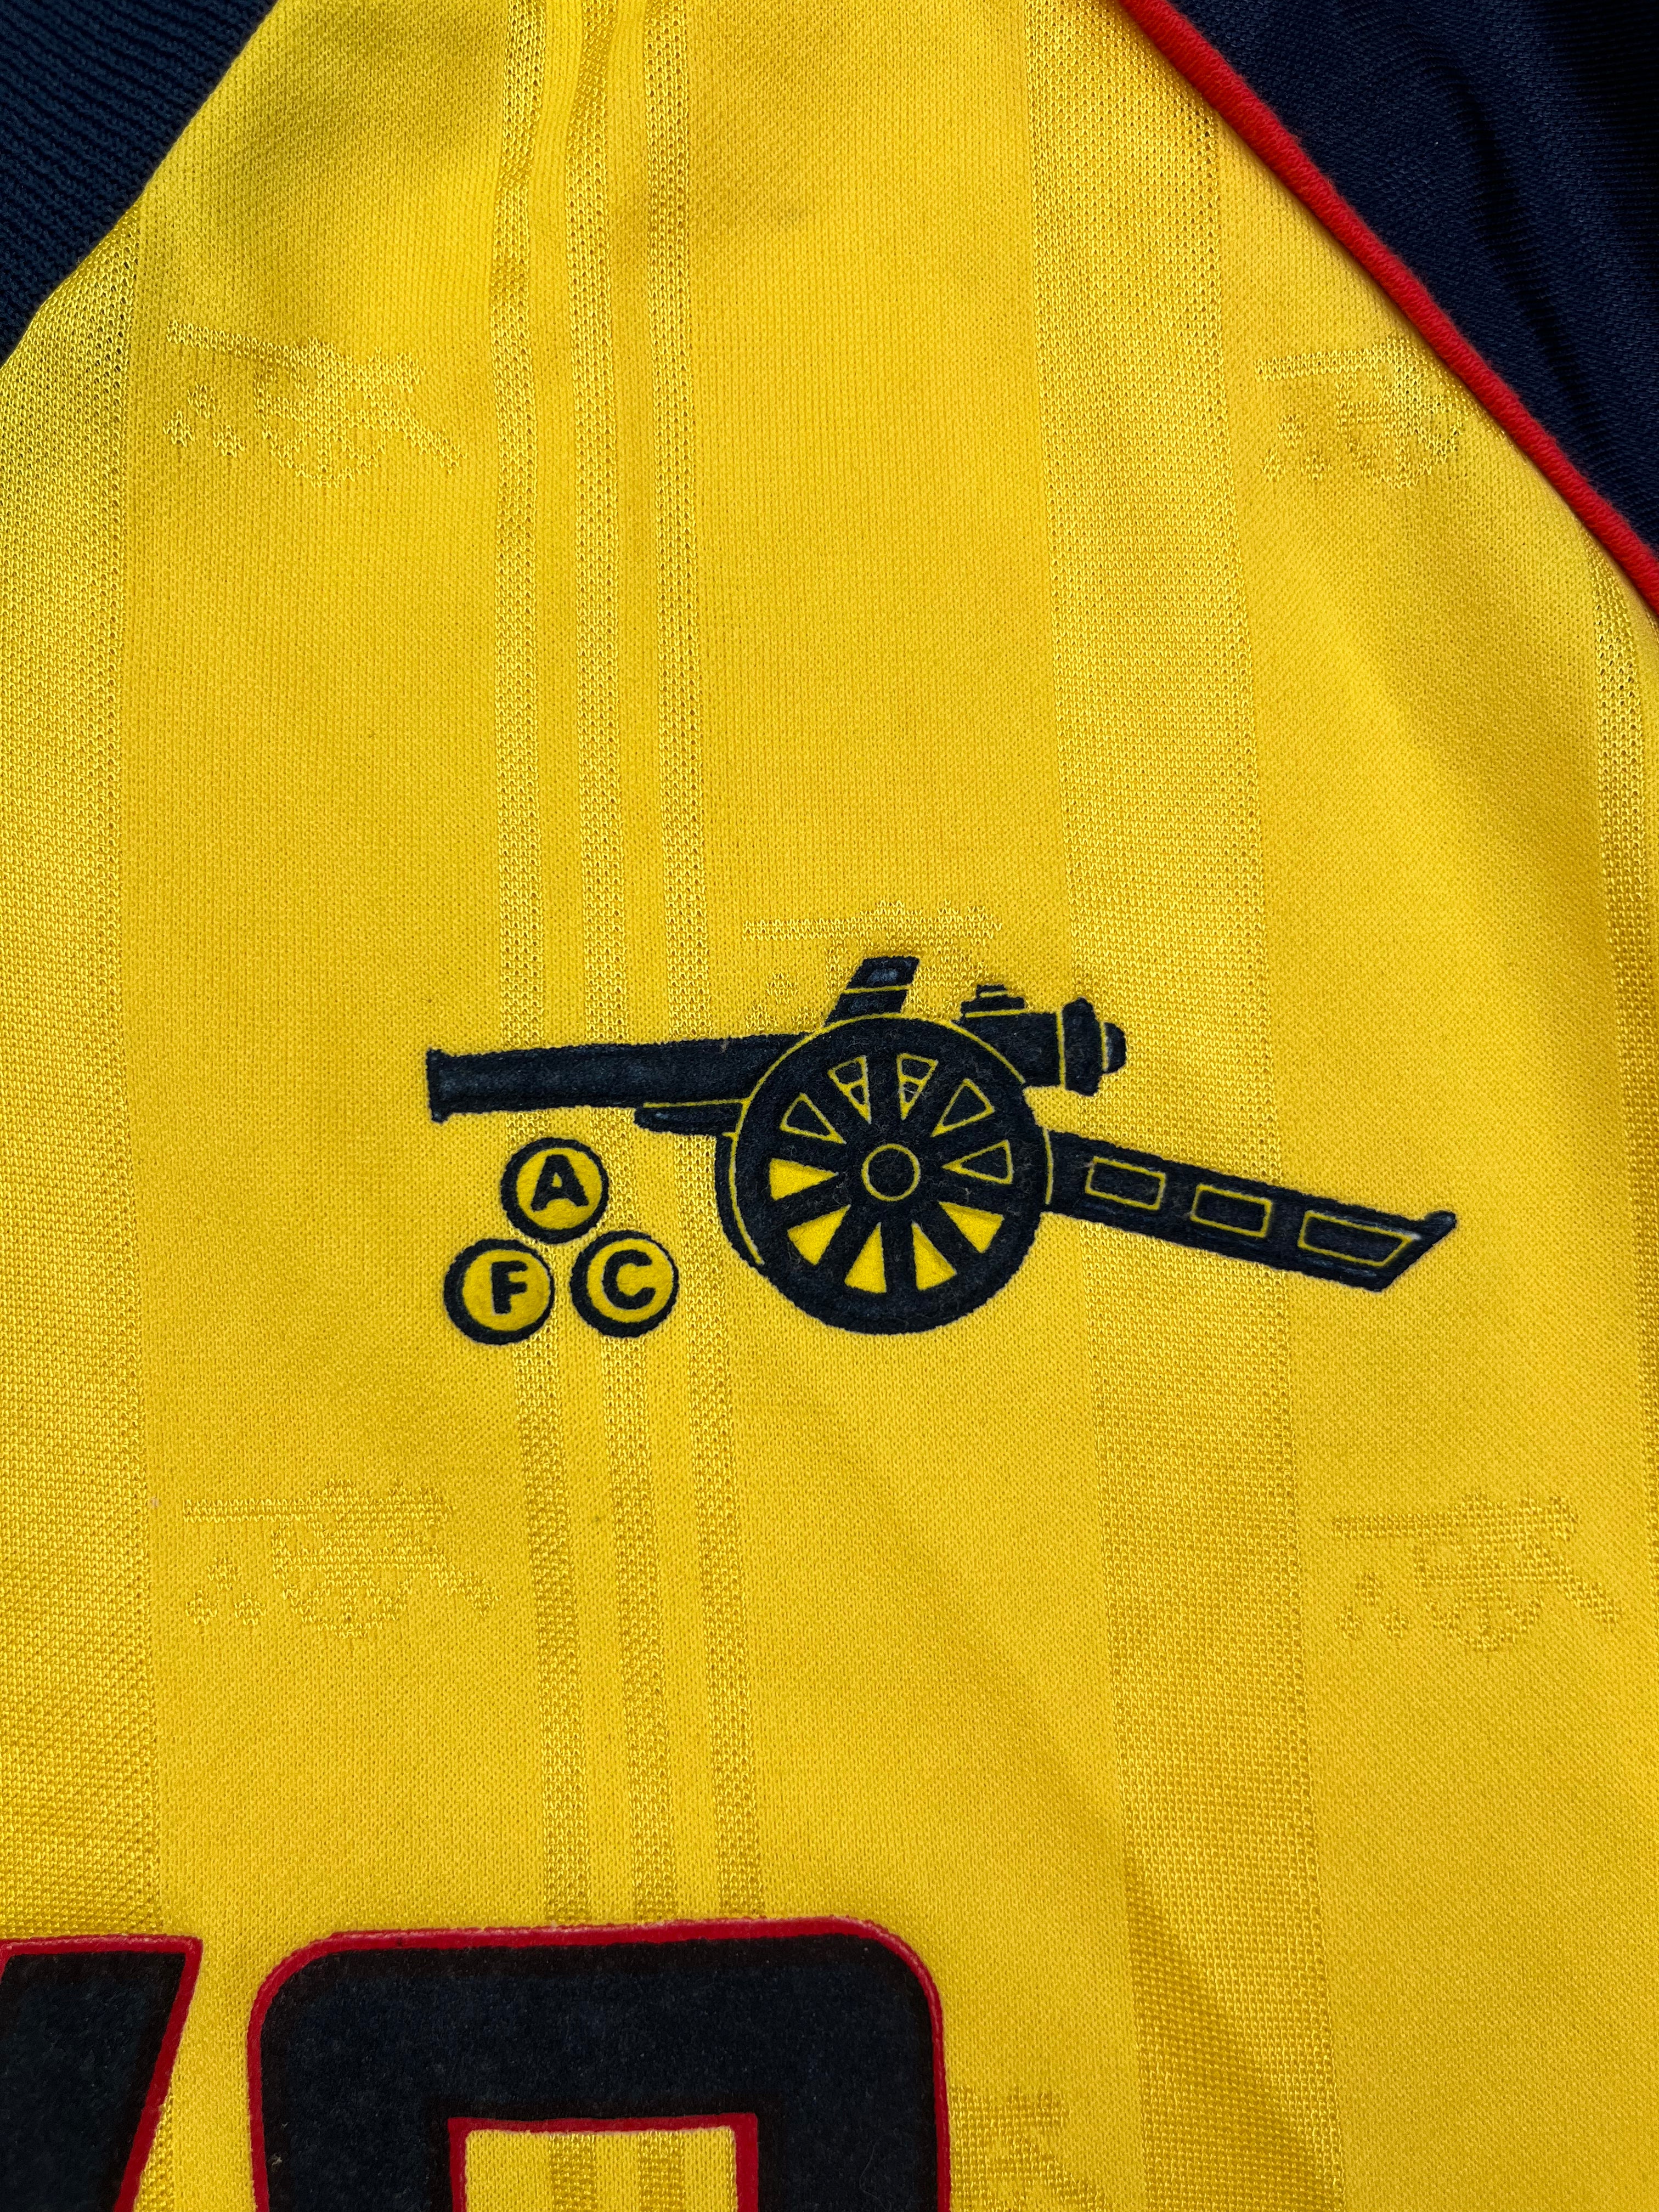 1989/91 Camiseta visitante del Arsenal (S) 9/10